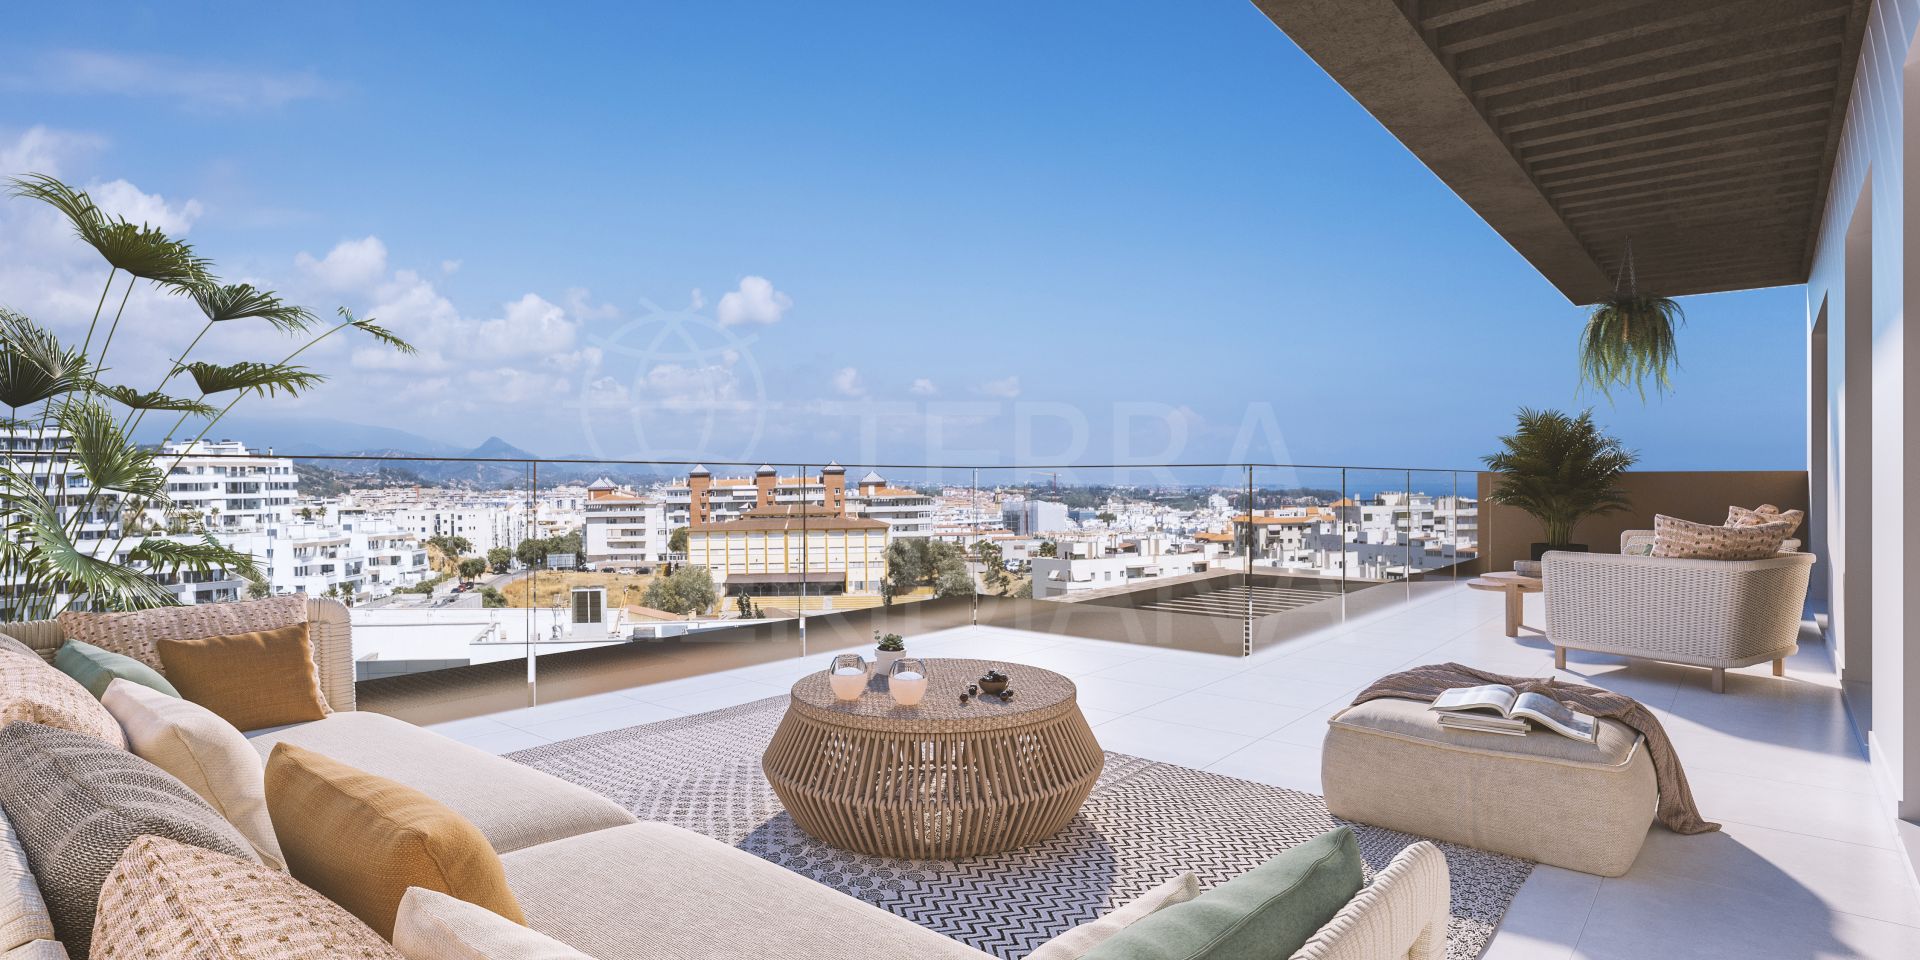 Mesas Homes, Estepona - Mesas Homes propose des appartements de 1, 2, 3 ou 4 chambres à coucher avec une vue magnifique sur la mer à vendre à Estepona